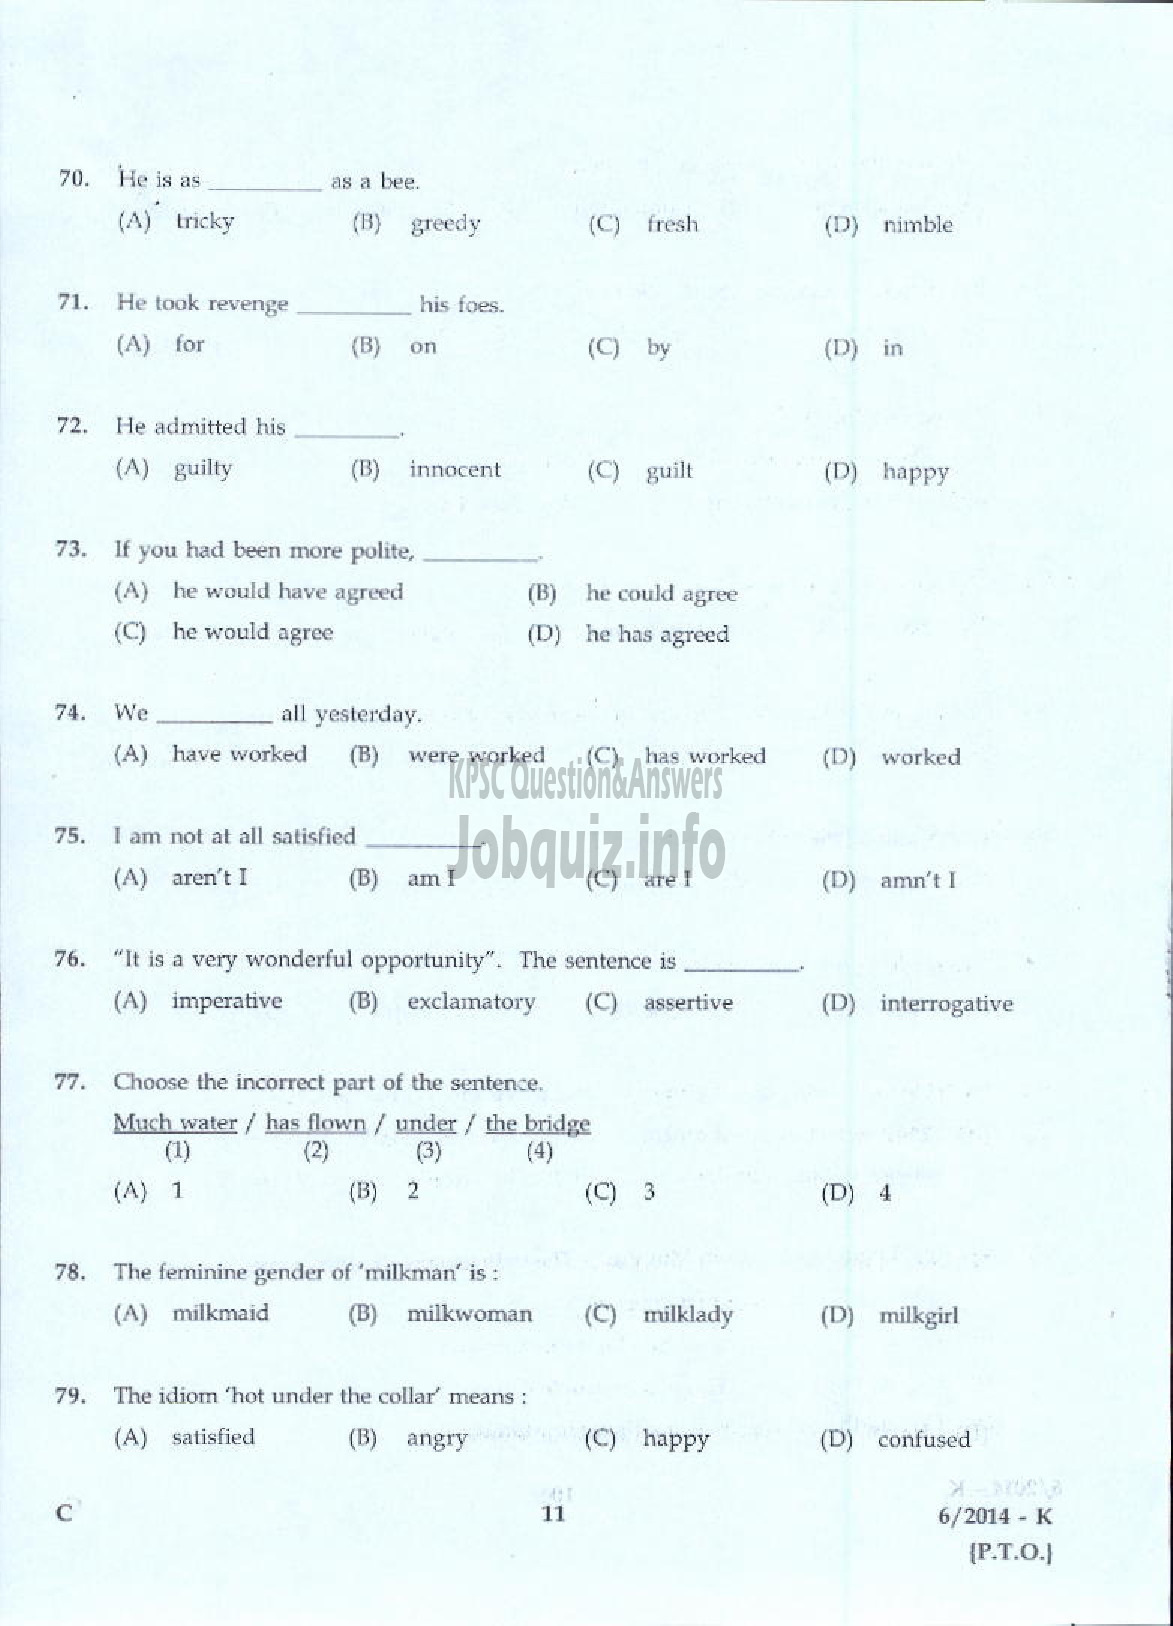 Kerala PSC Question Paper - LDC VARIOUS 2014 ALAPPUZHA ( Kannada )-9